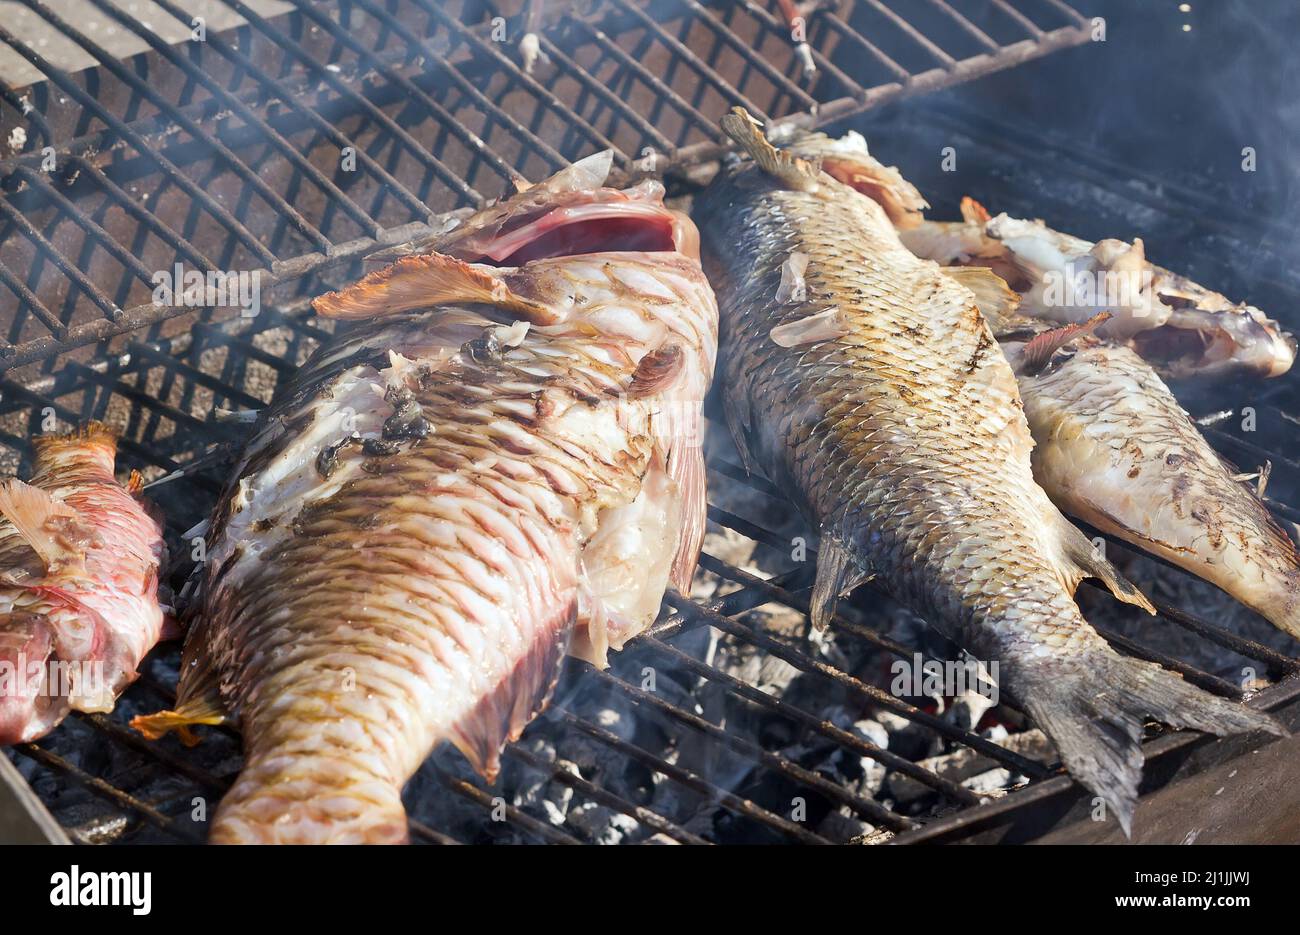 Fish barbecue Stock Photo